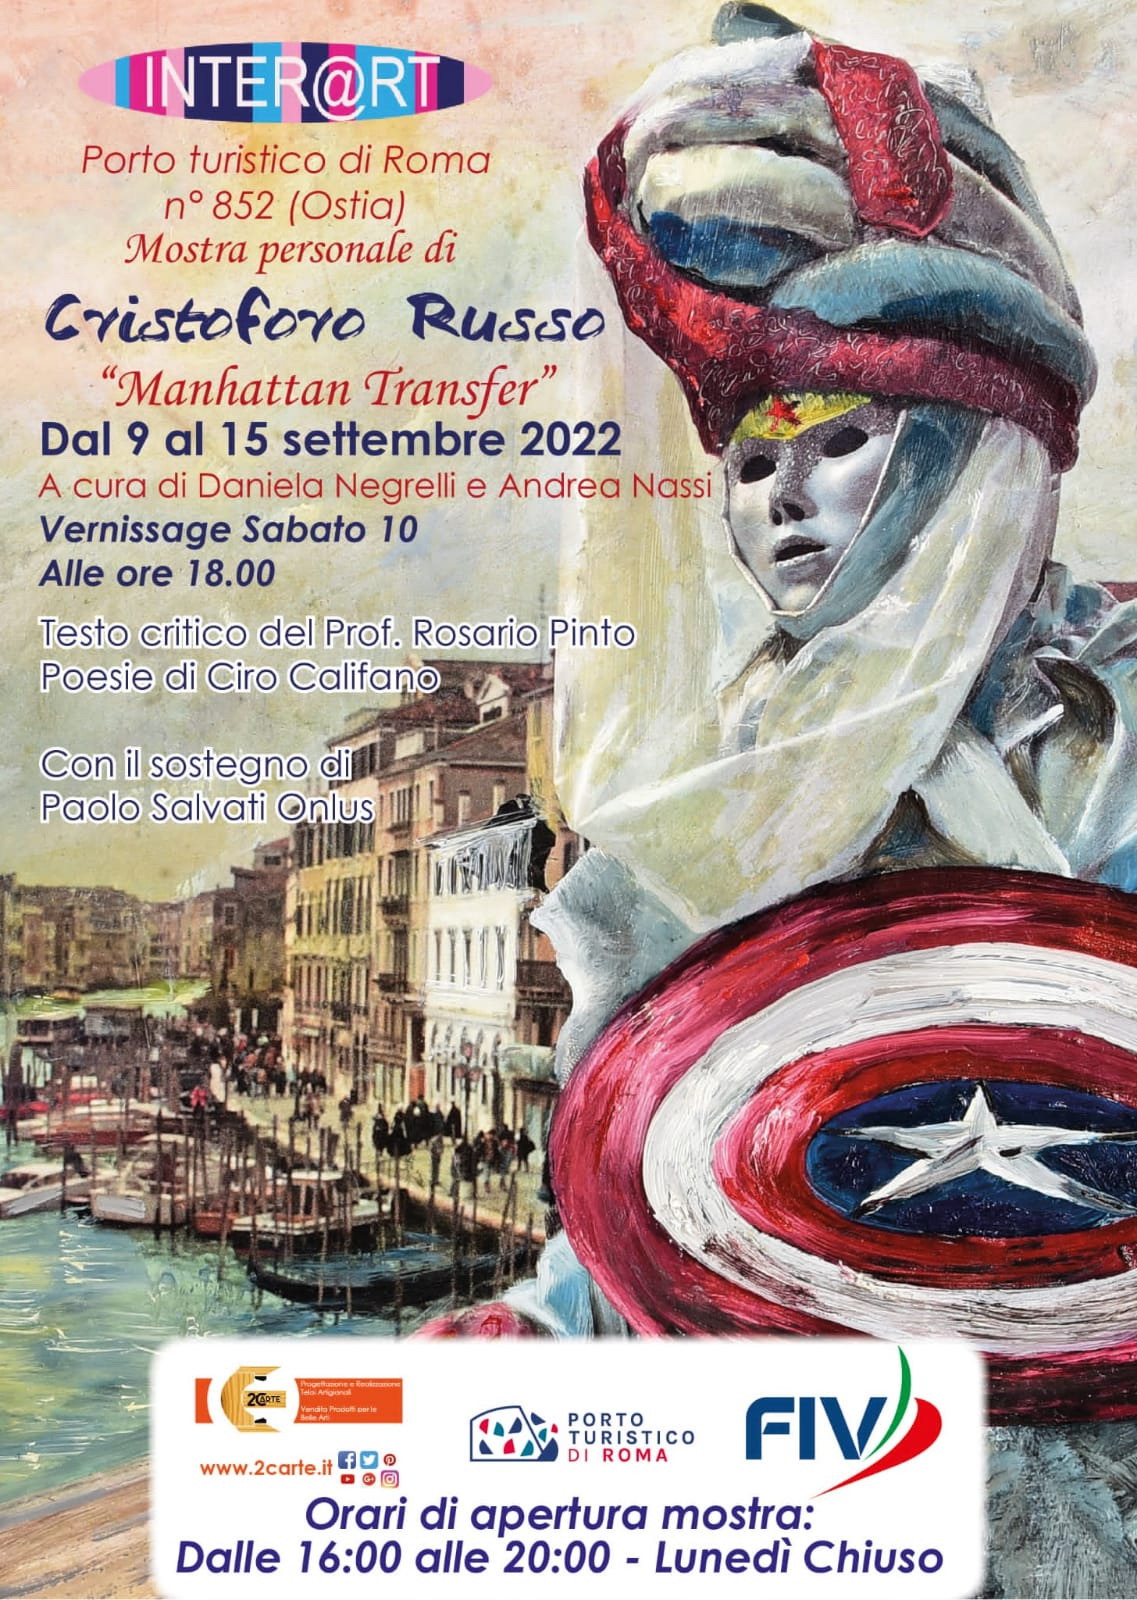 Interart con la pittura di Cristoforo Russo al porto turistico di Ostia